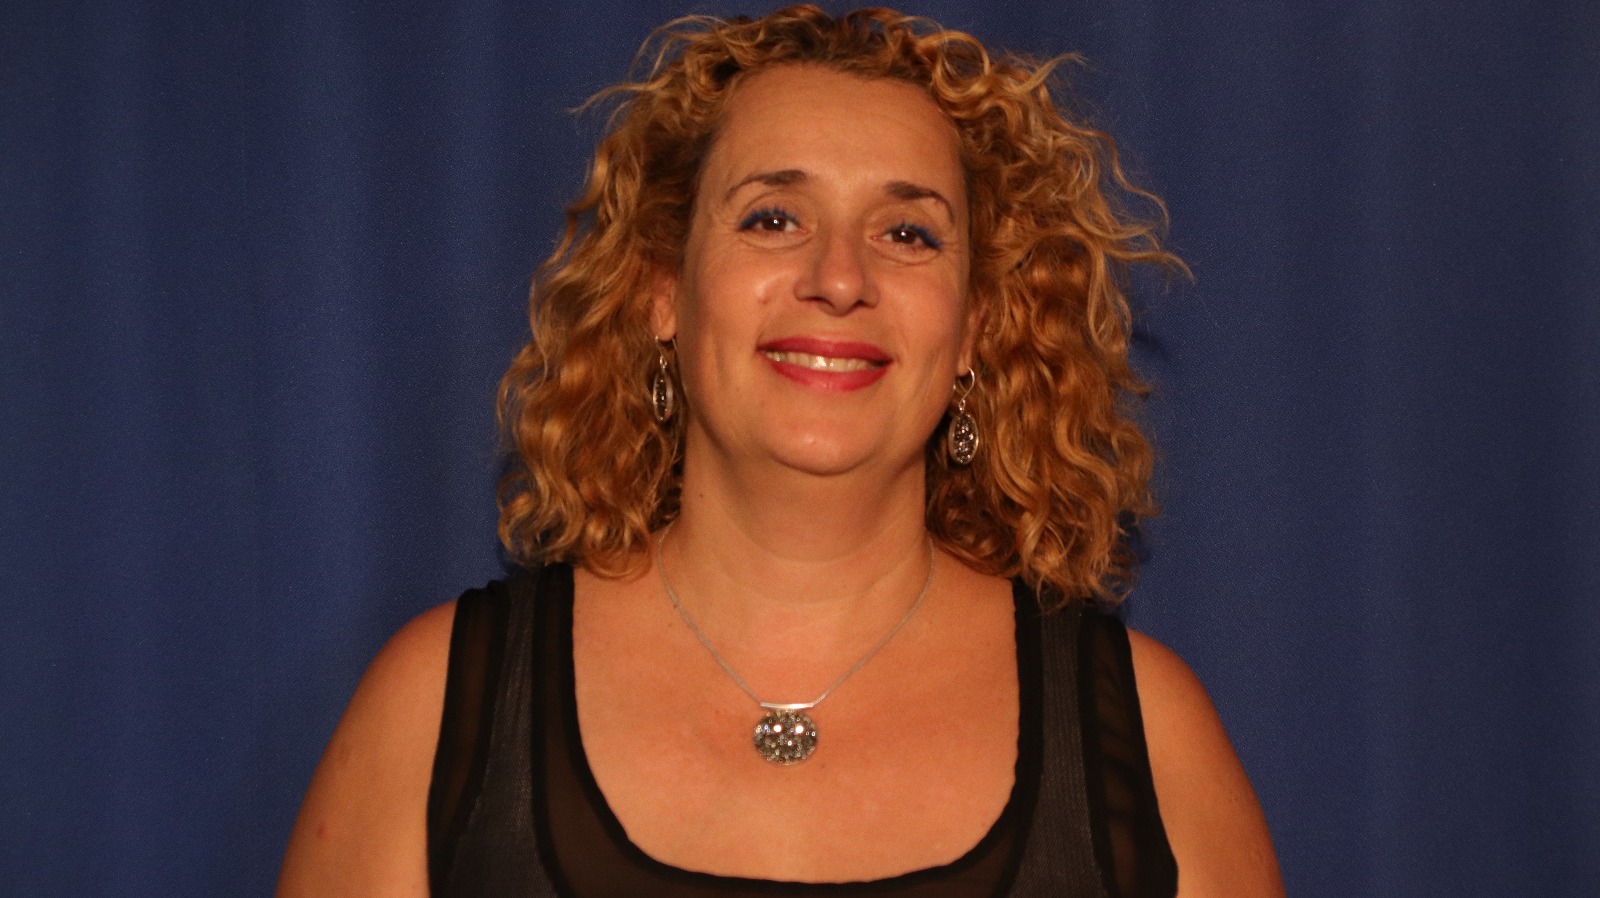 רחל לנצ'נר נבחרה לתפקיד מנהלת מחלקת החינוך  העירונית של העיר ערד